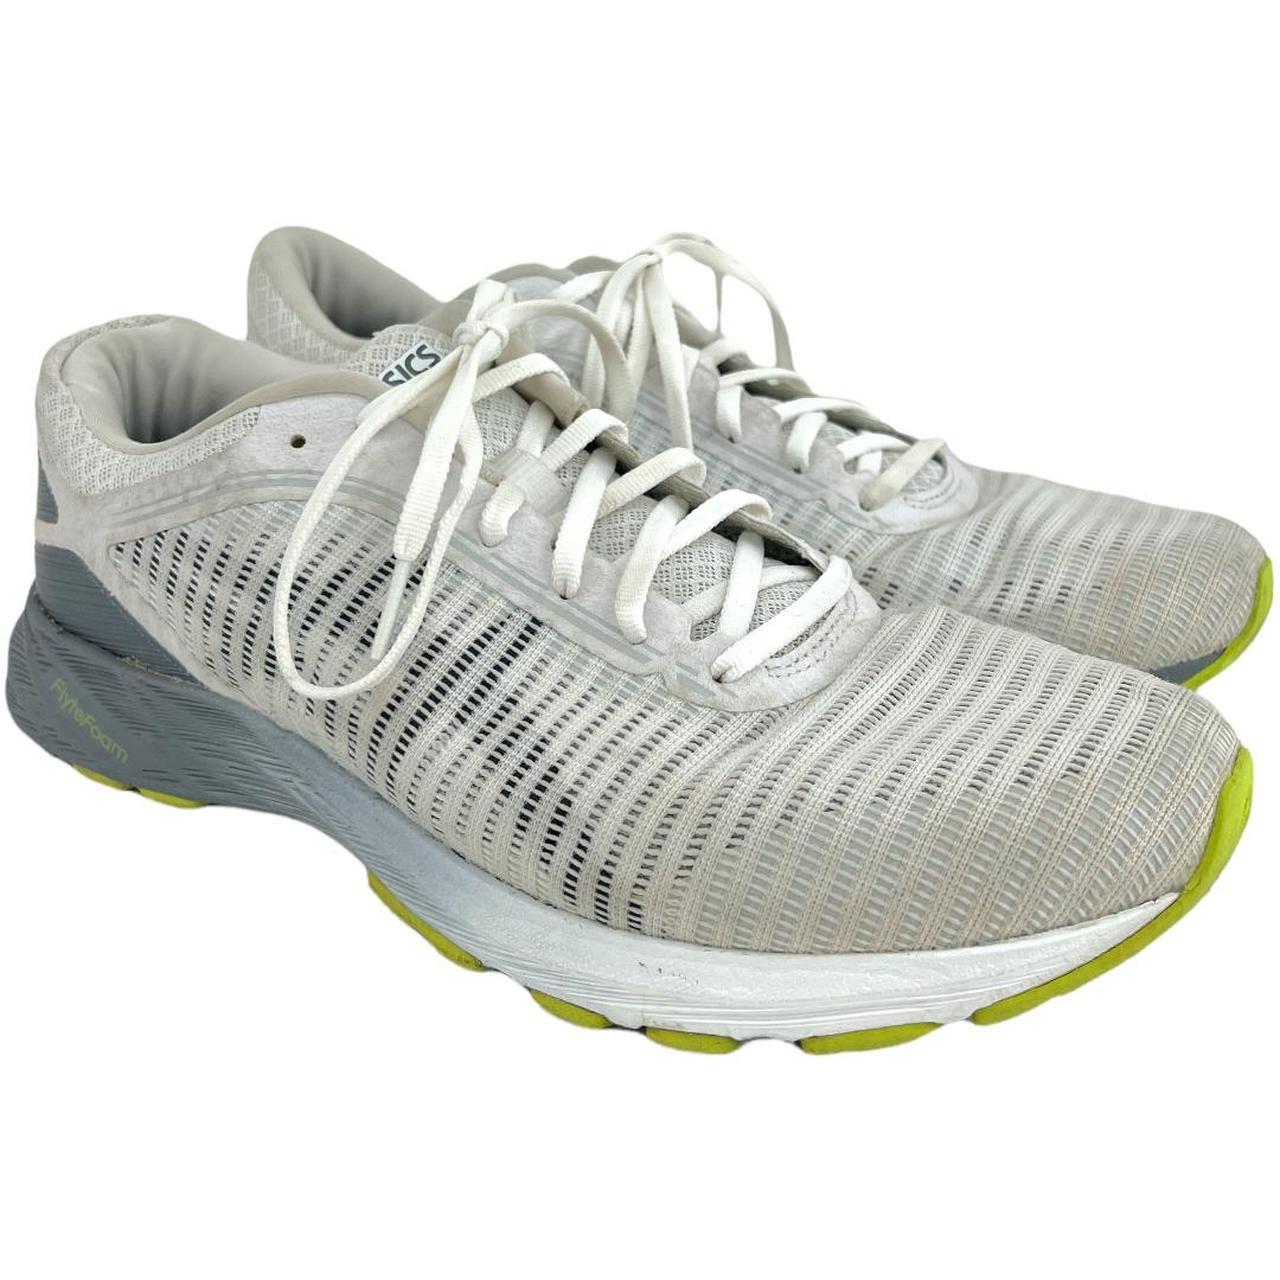 ASICS (11) Mens DynaFlyte 2 White Gray Running Shoes... - Depop